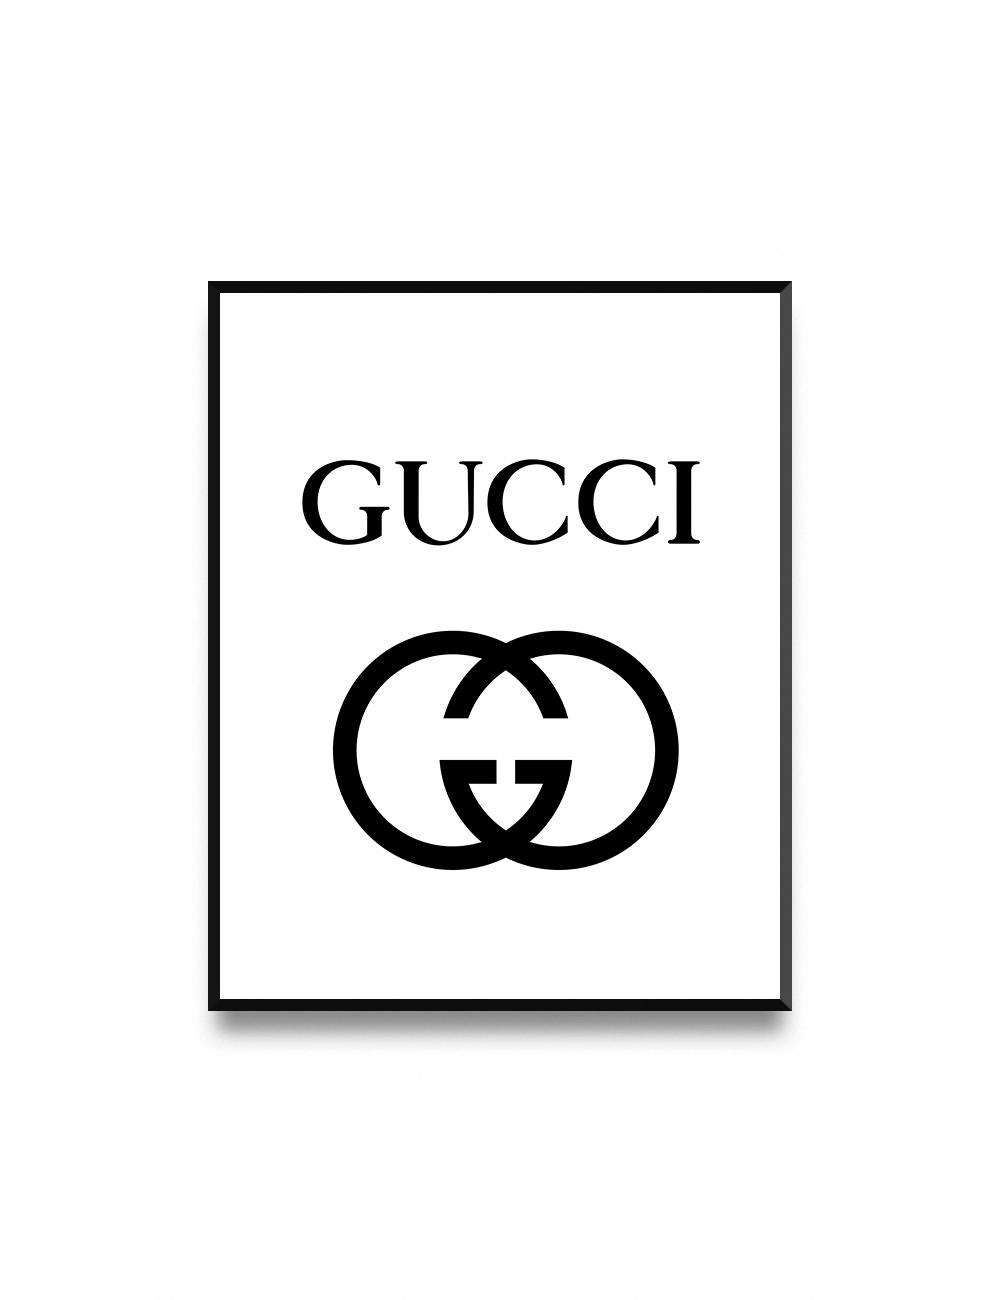 Gucci Printable Images - Printable World Holiday